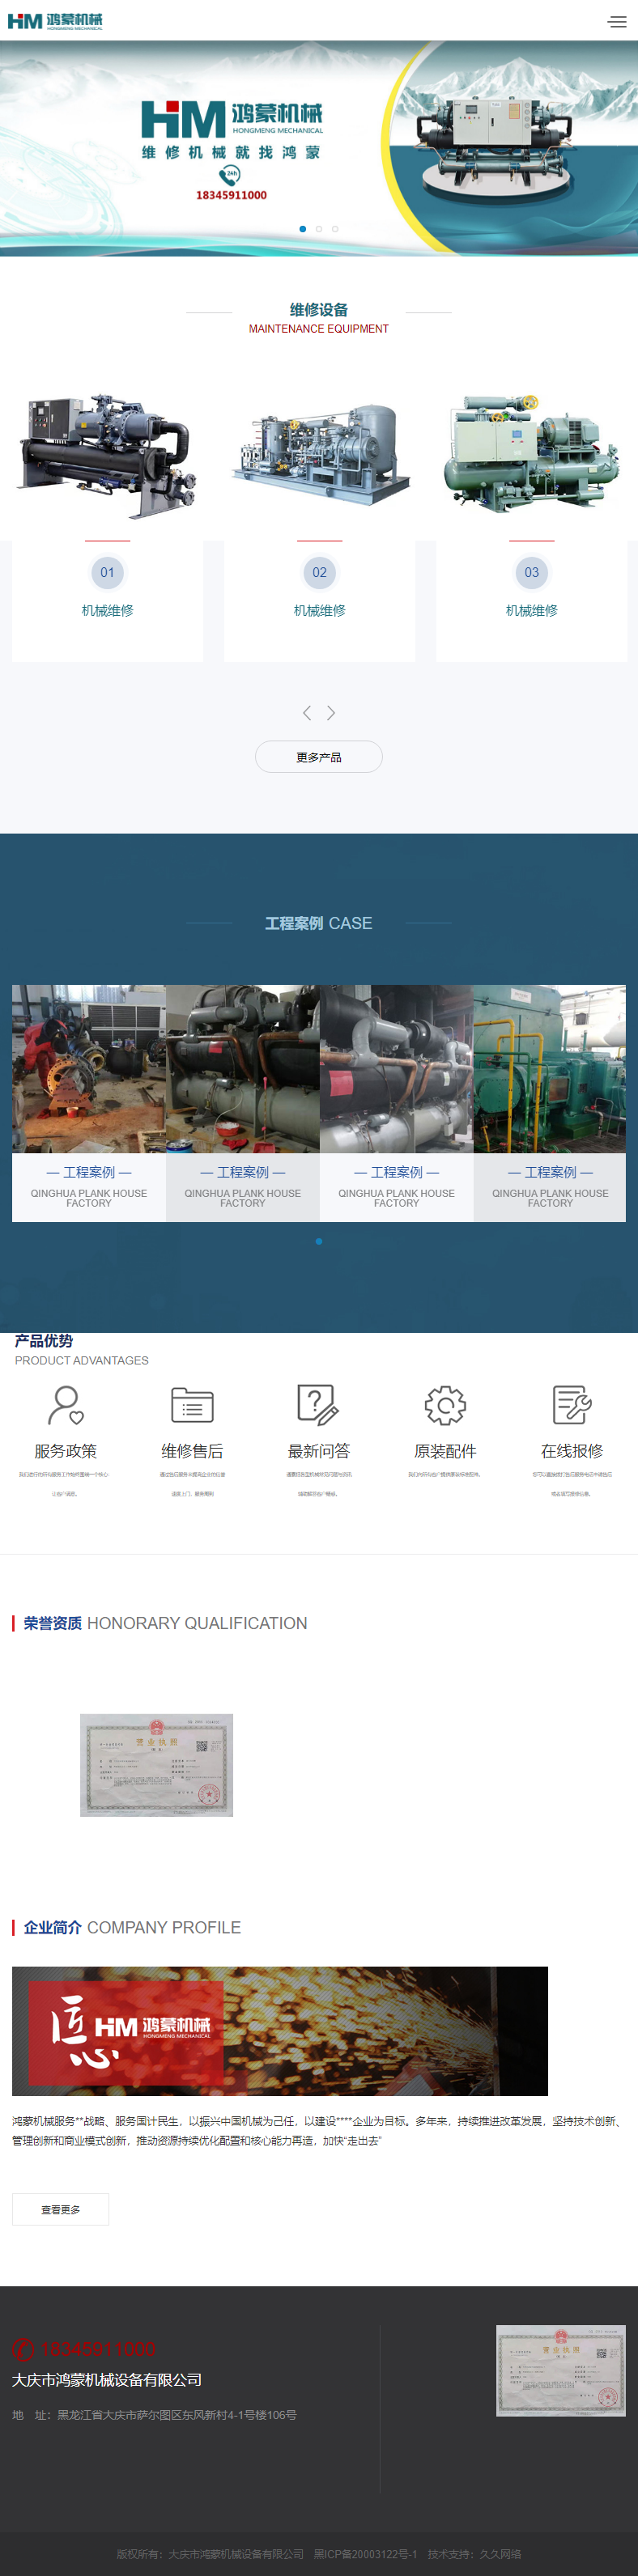 大庆市鸿蒙机械设备有限公司网站案例